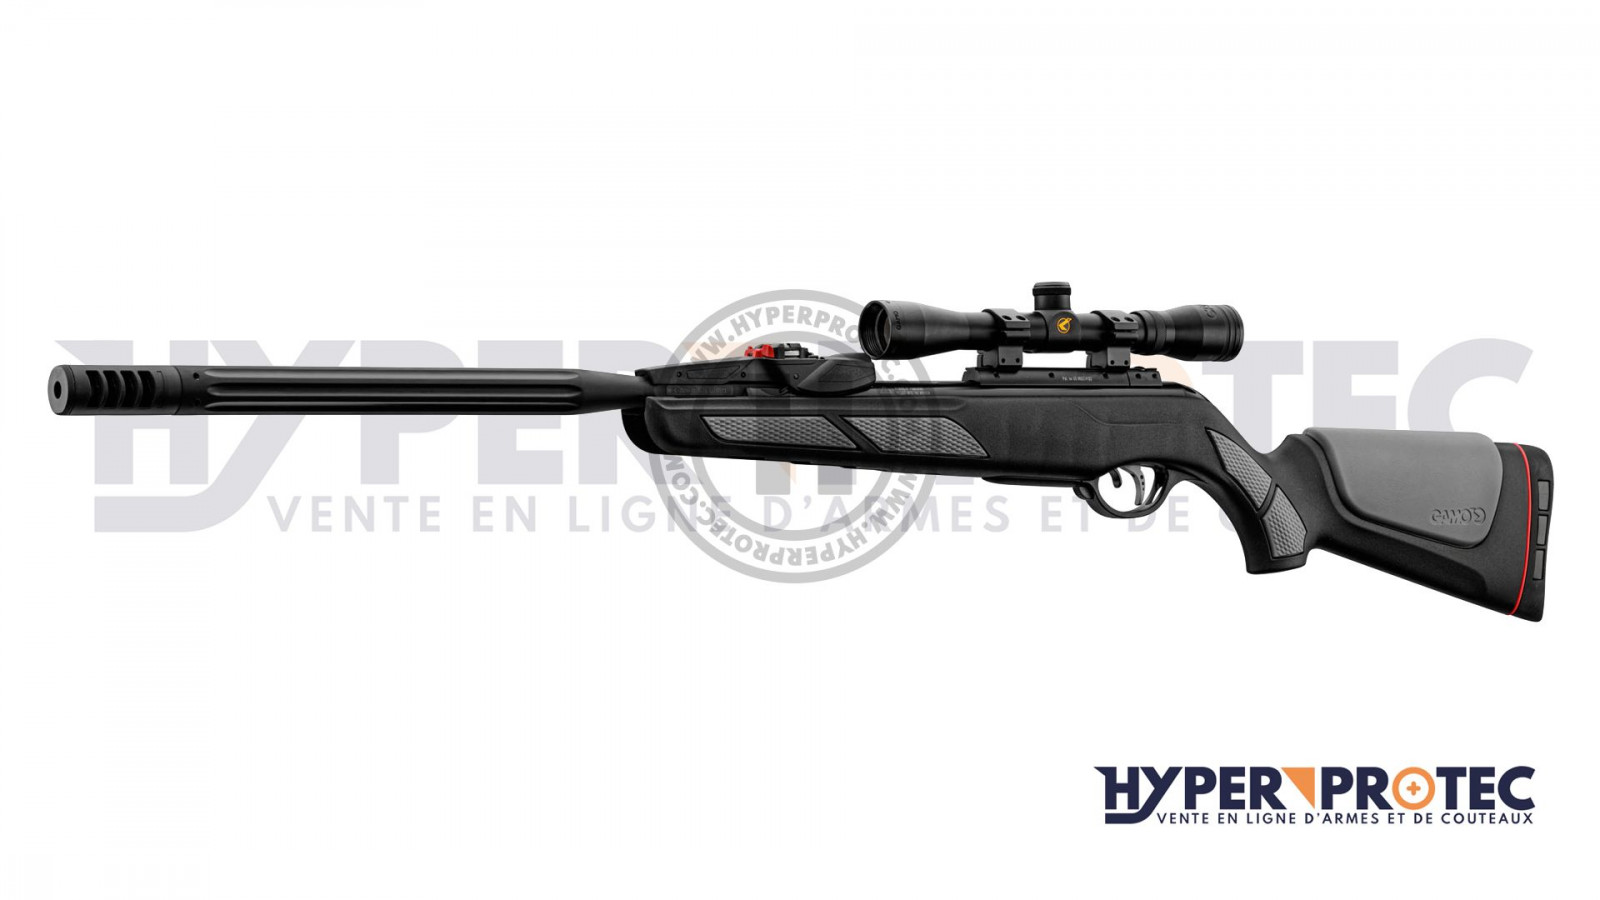 Pastille Gamo TS-10 4,5mm 200u PLOMBS DE TIR SUR CIBLE carabine à air  comprimé